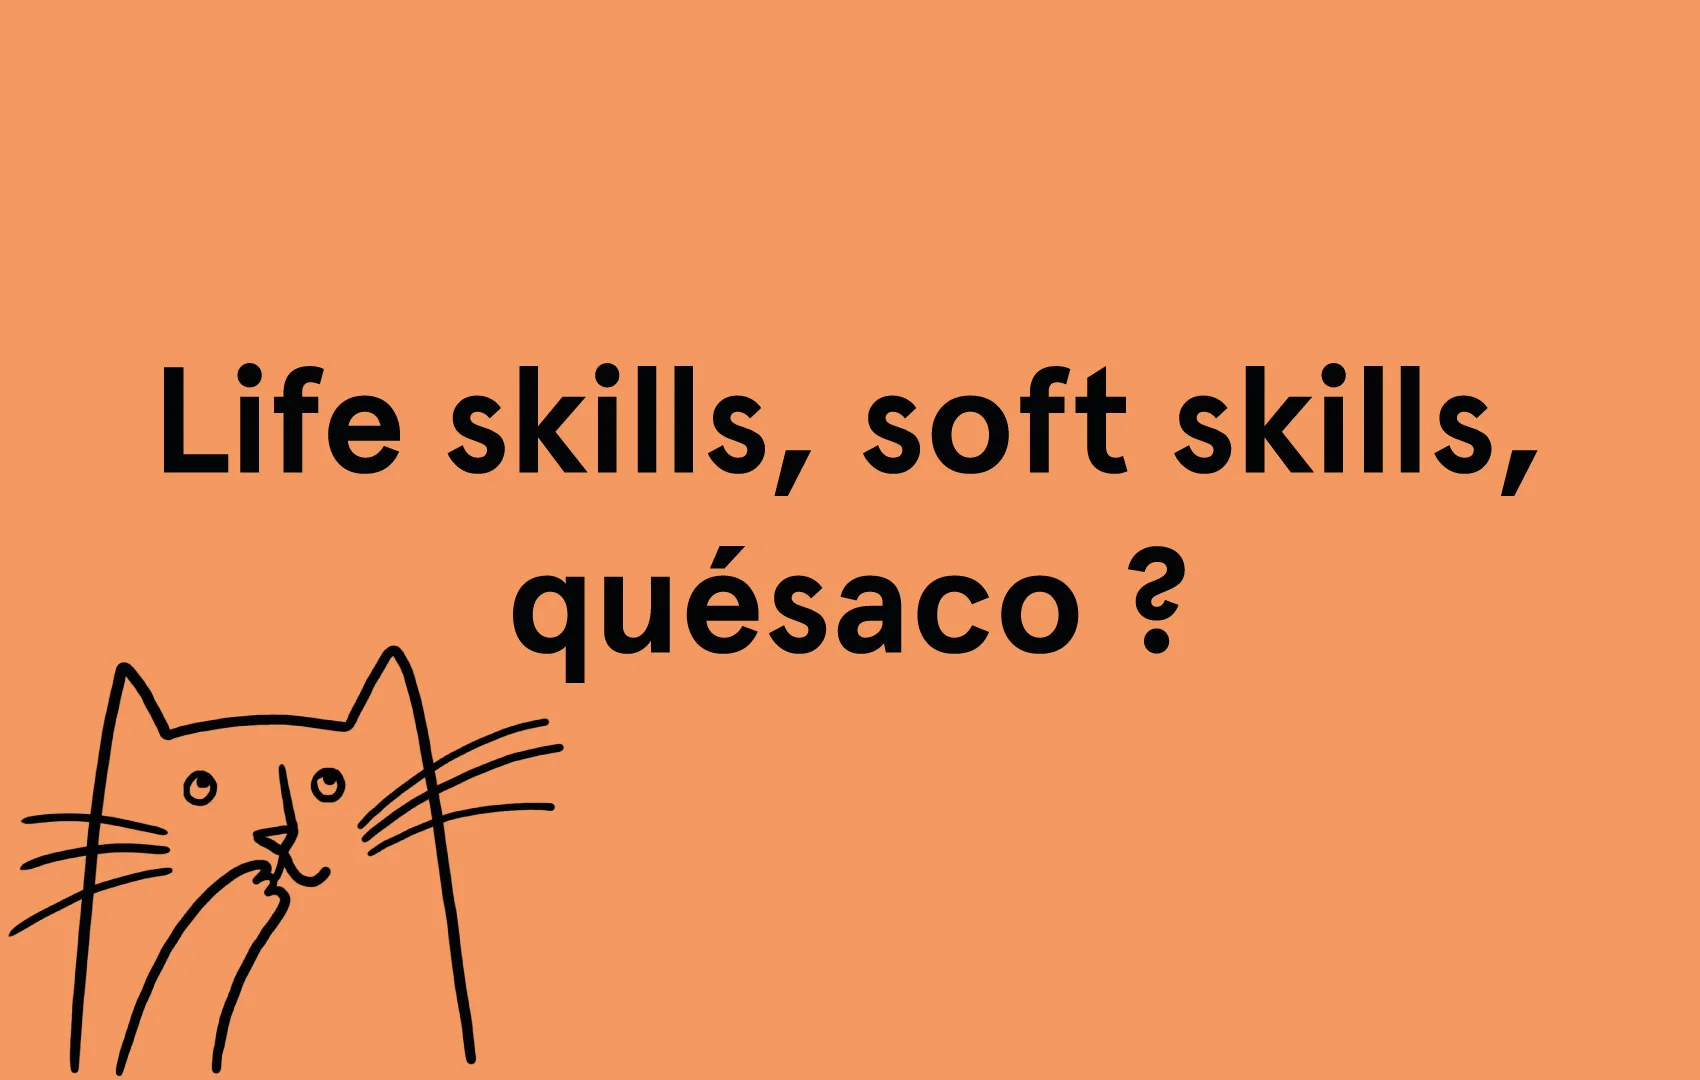 Life skills, soft skills, c'est quoi ?